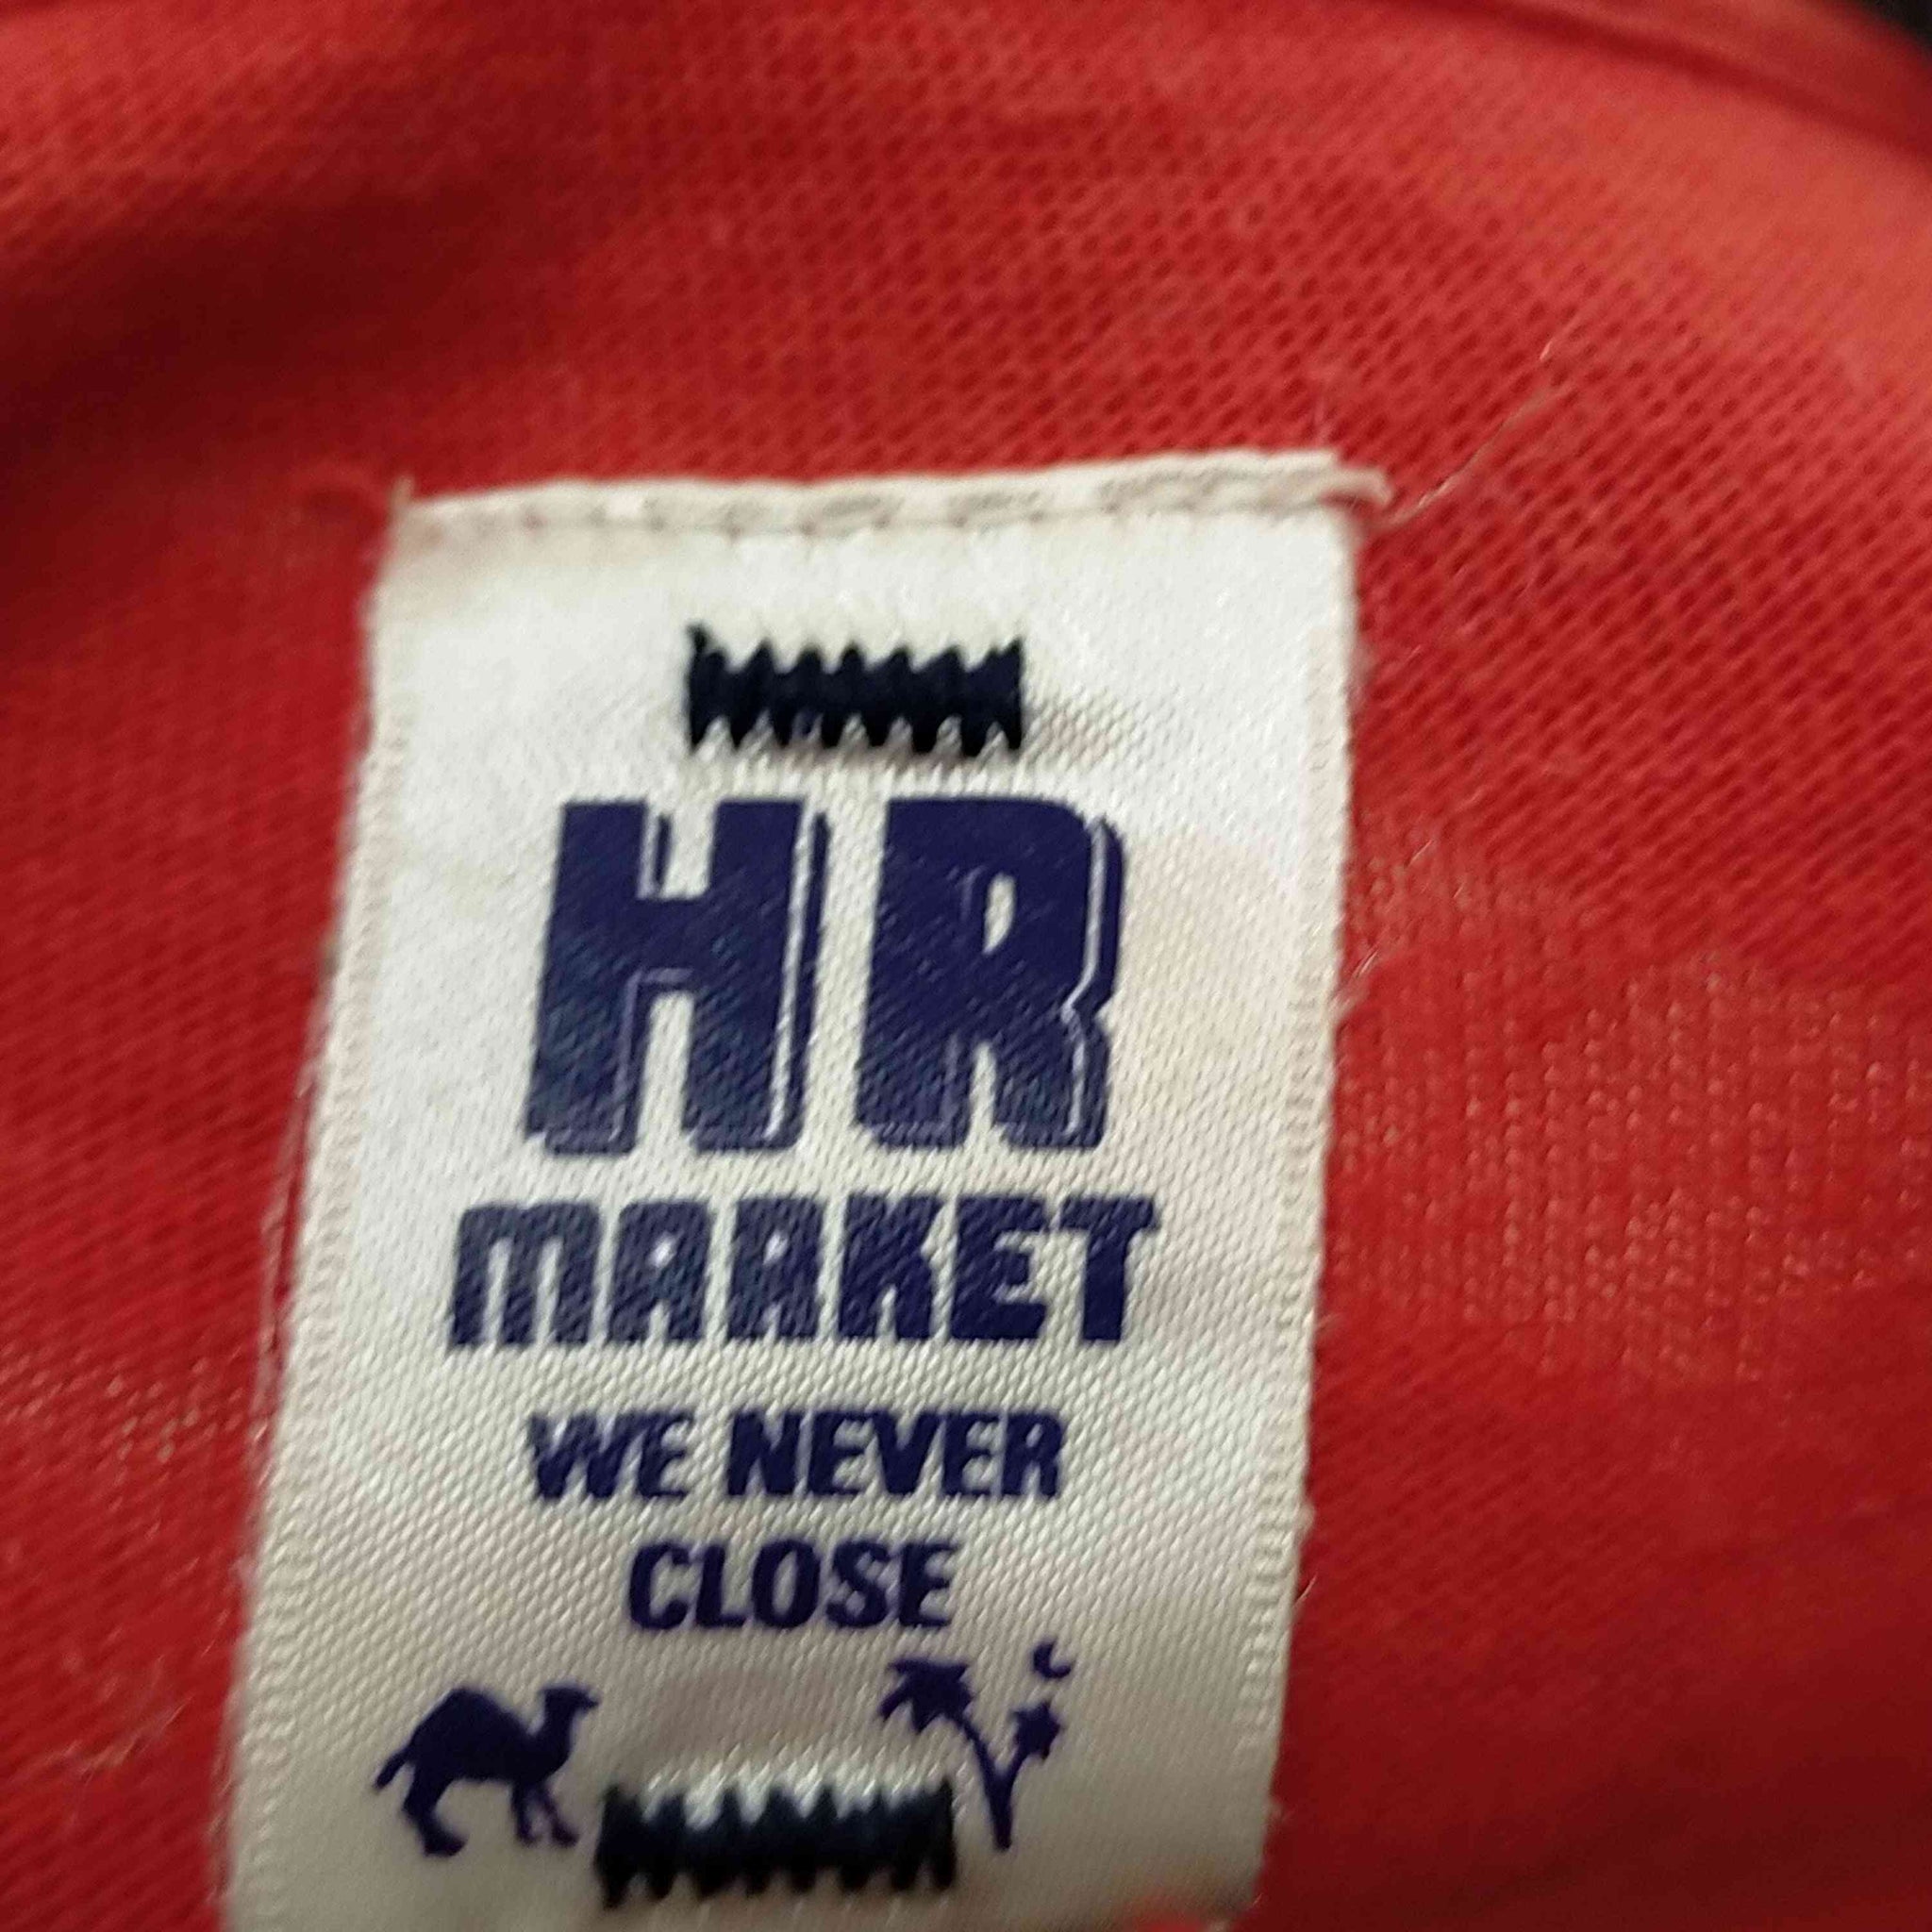 HOLLYWOOD RANCH MARKET(ハリウッドランチマーケット)SECURITE クルーネックTシャツ